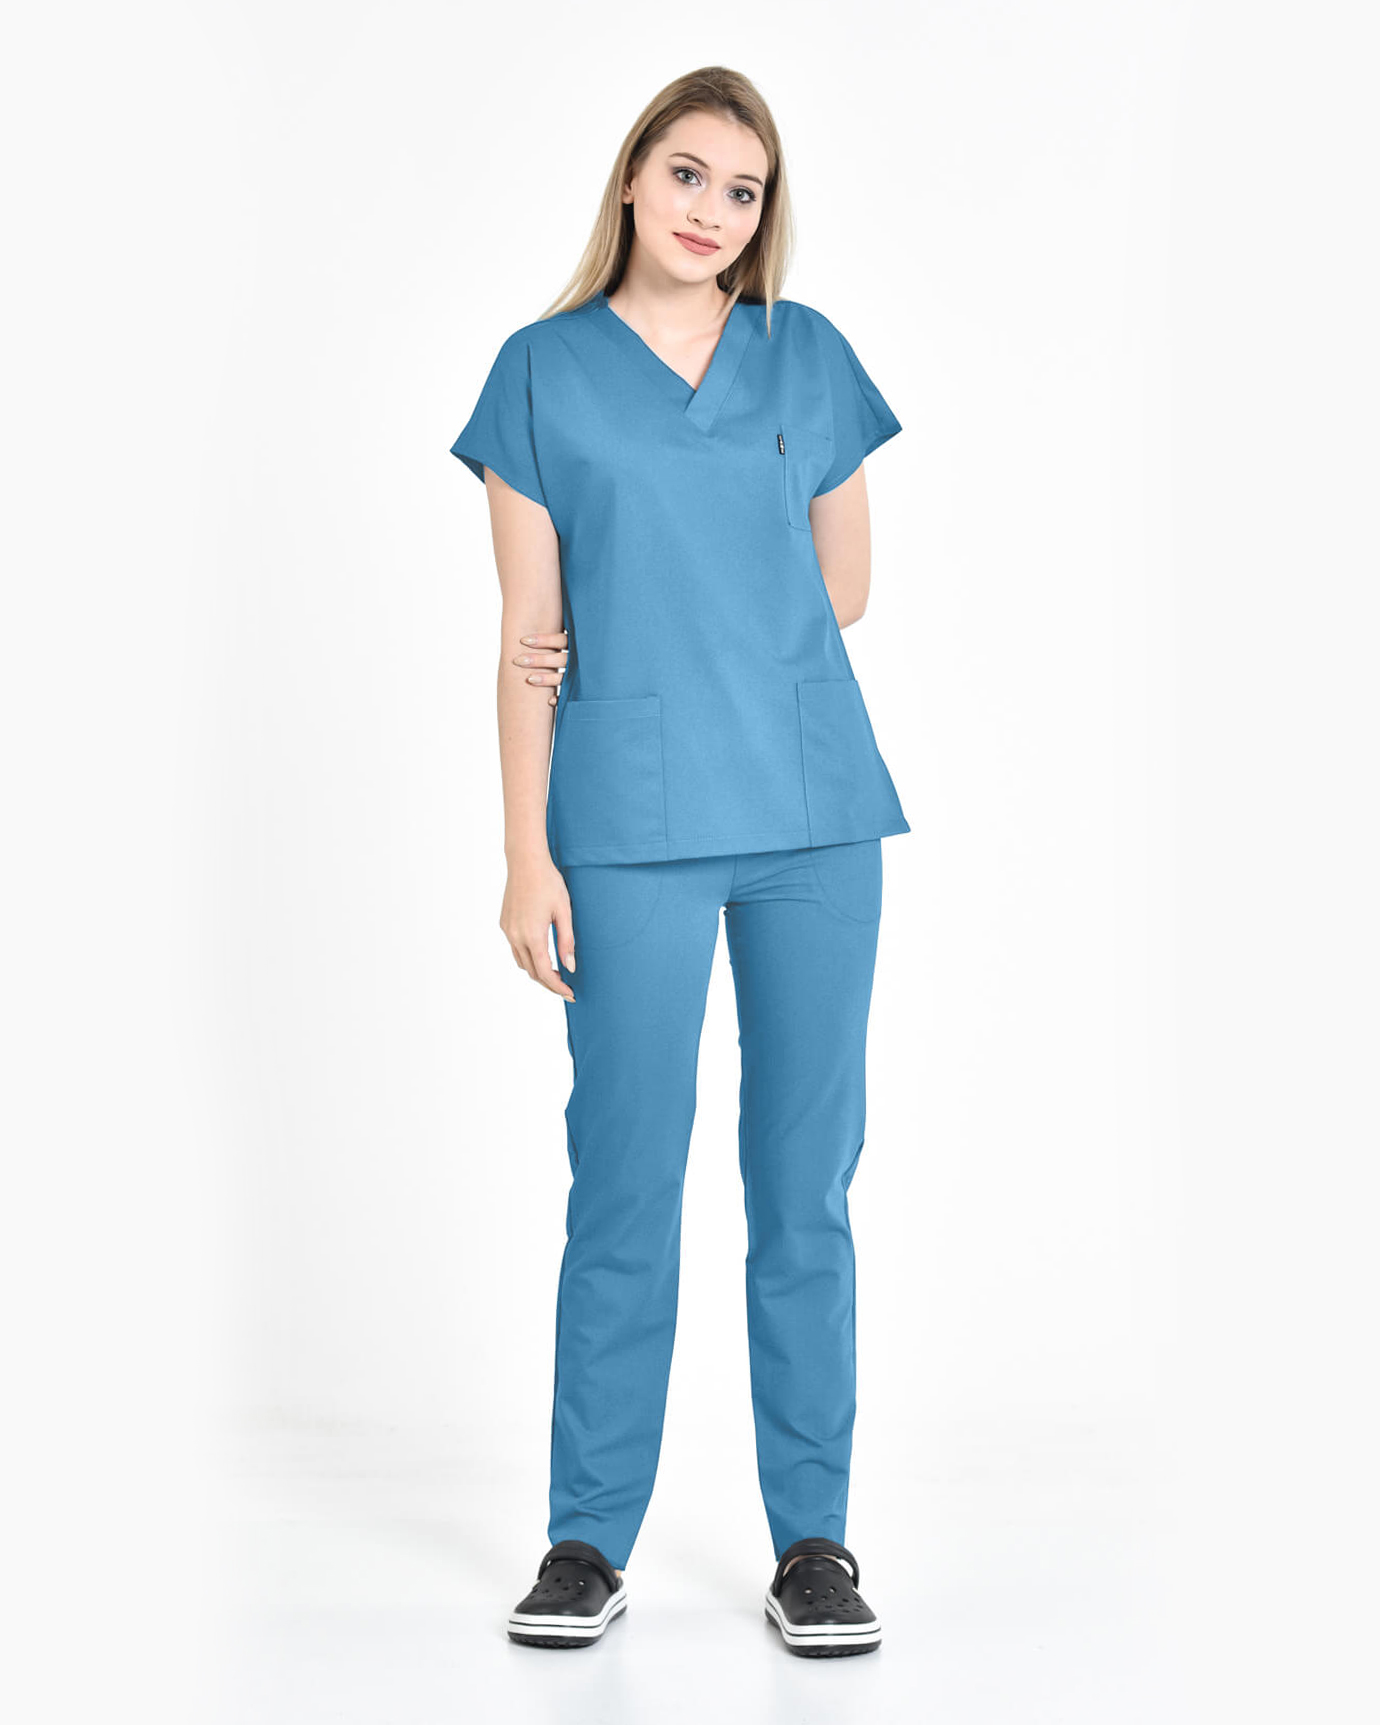 Kadın Premium Seri Relax İndigo Mavisi Yarasa Kol Doktor ve Hemşire Forması Takımı